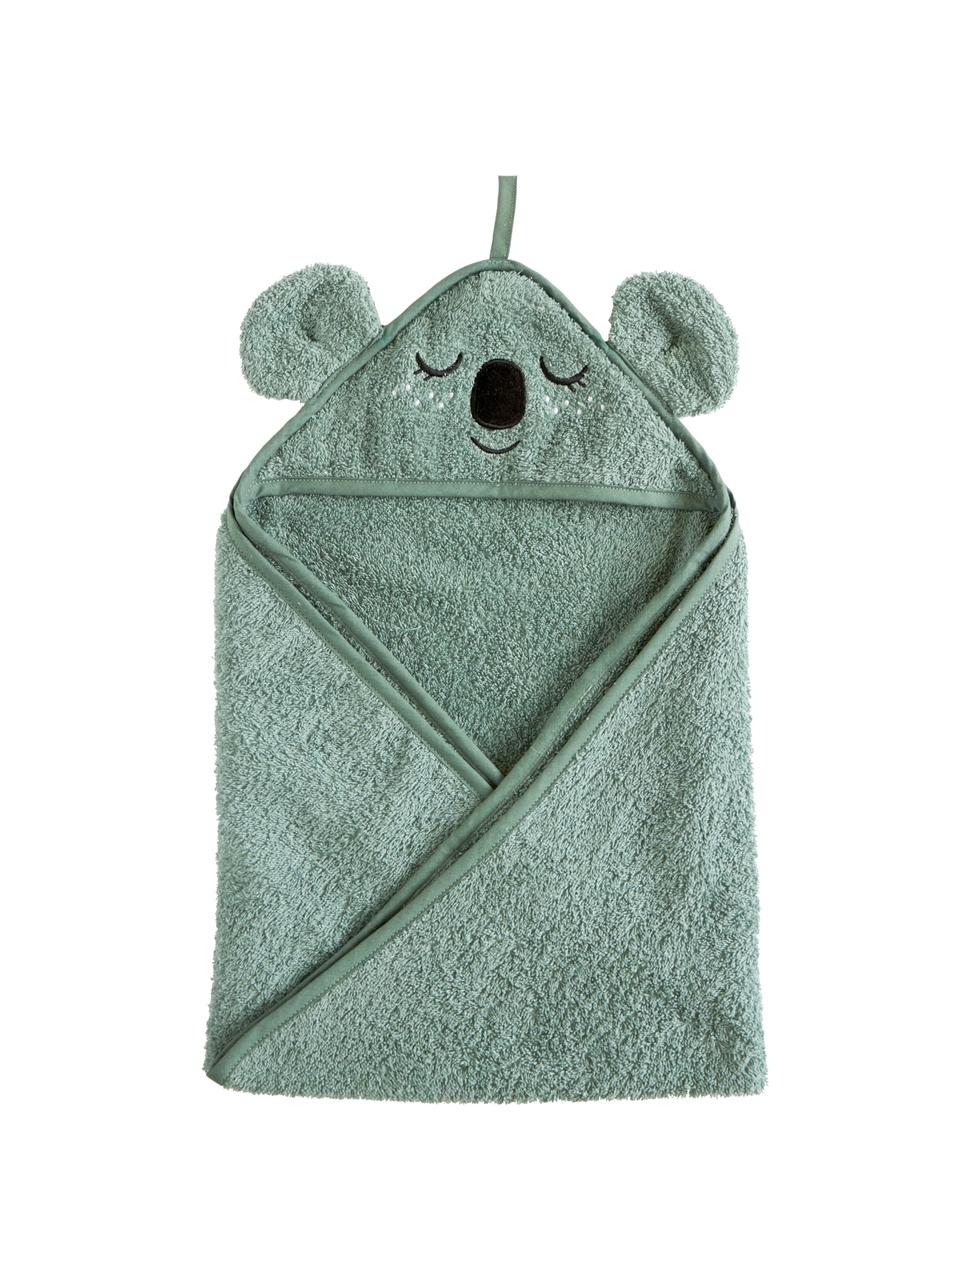 Asciugamano bambini in cotone organico Koala, 100% cotone organico certificato GOTS, Blu verde, Larg. 72 x Lung. 72 cm